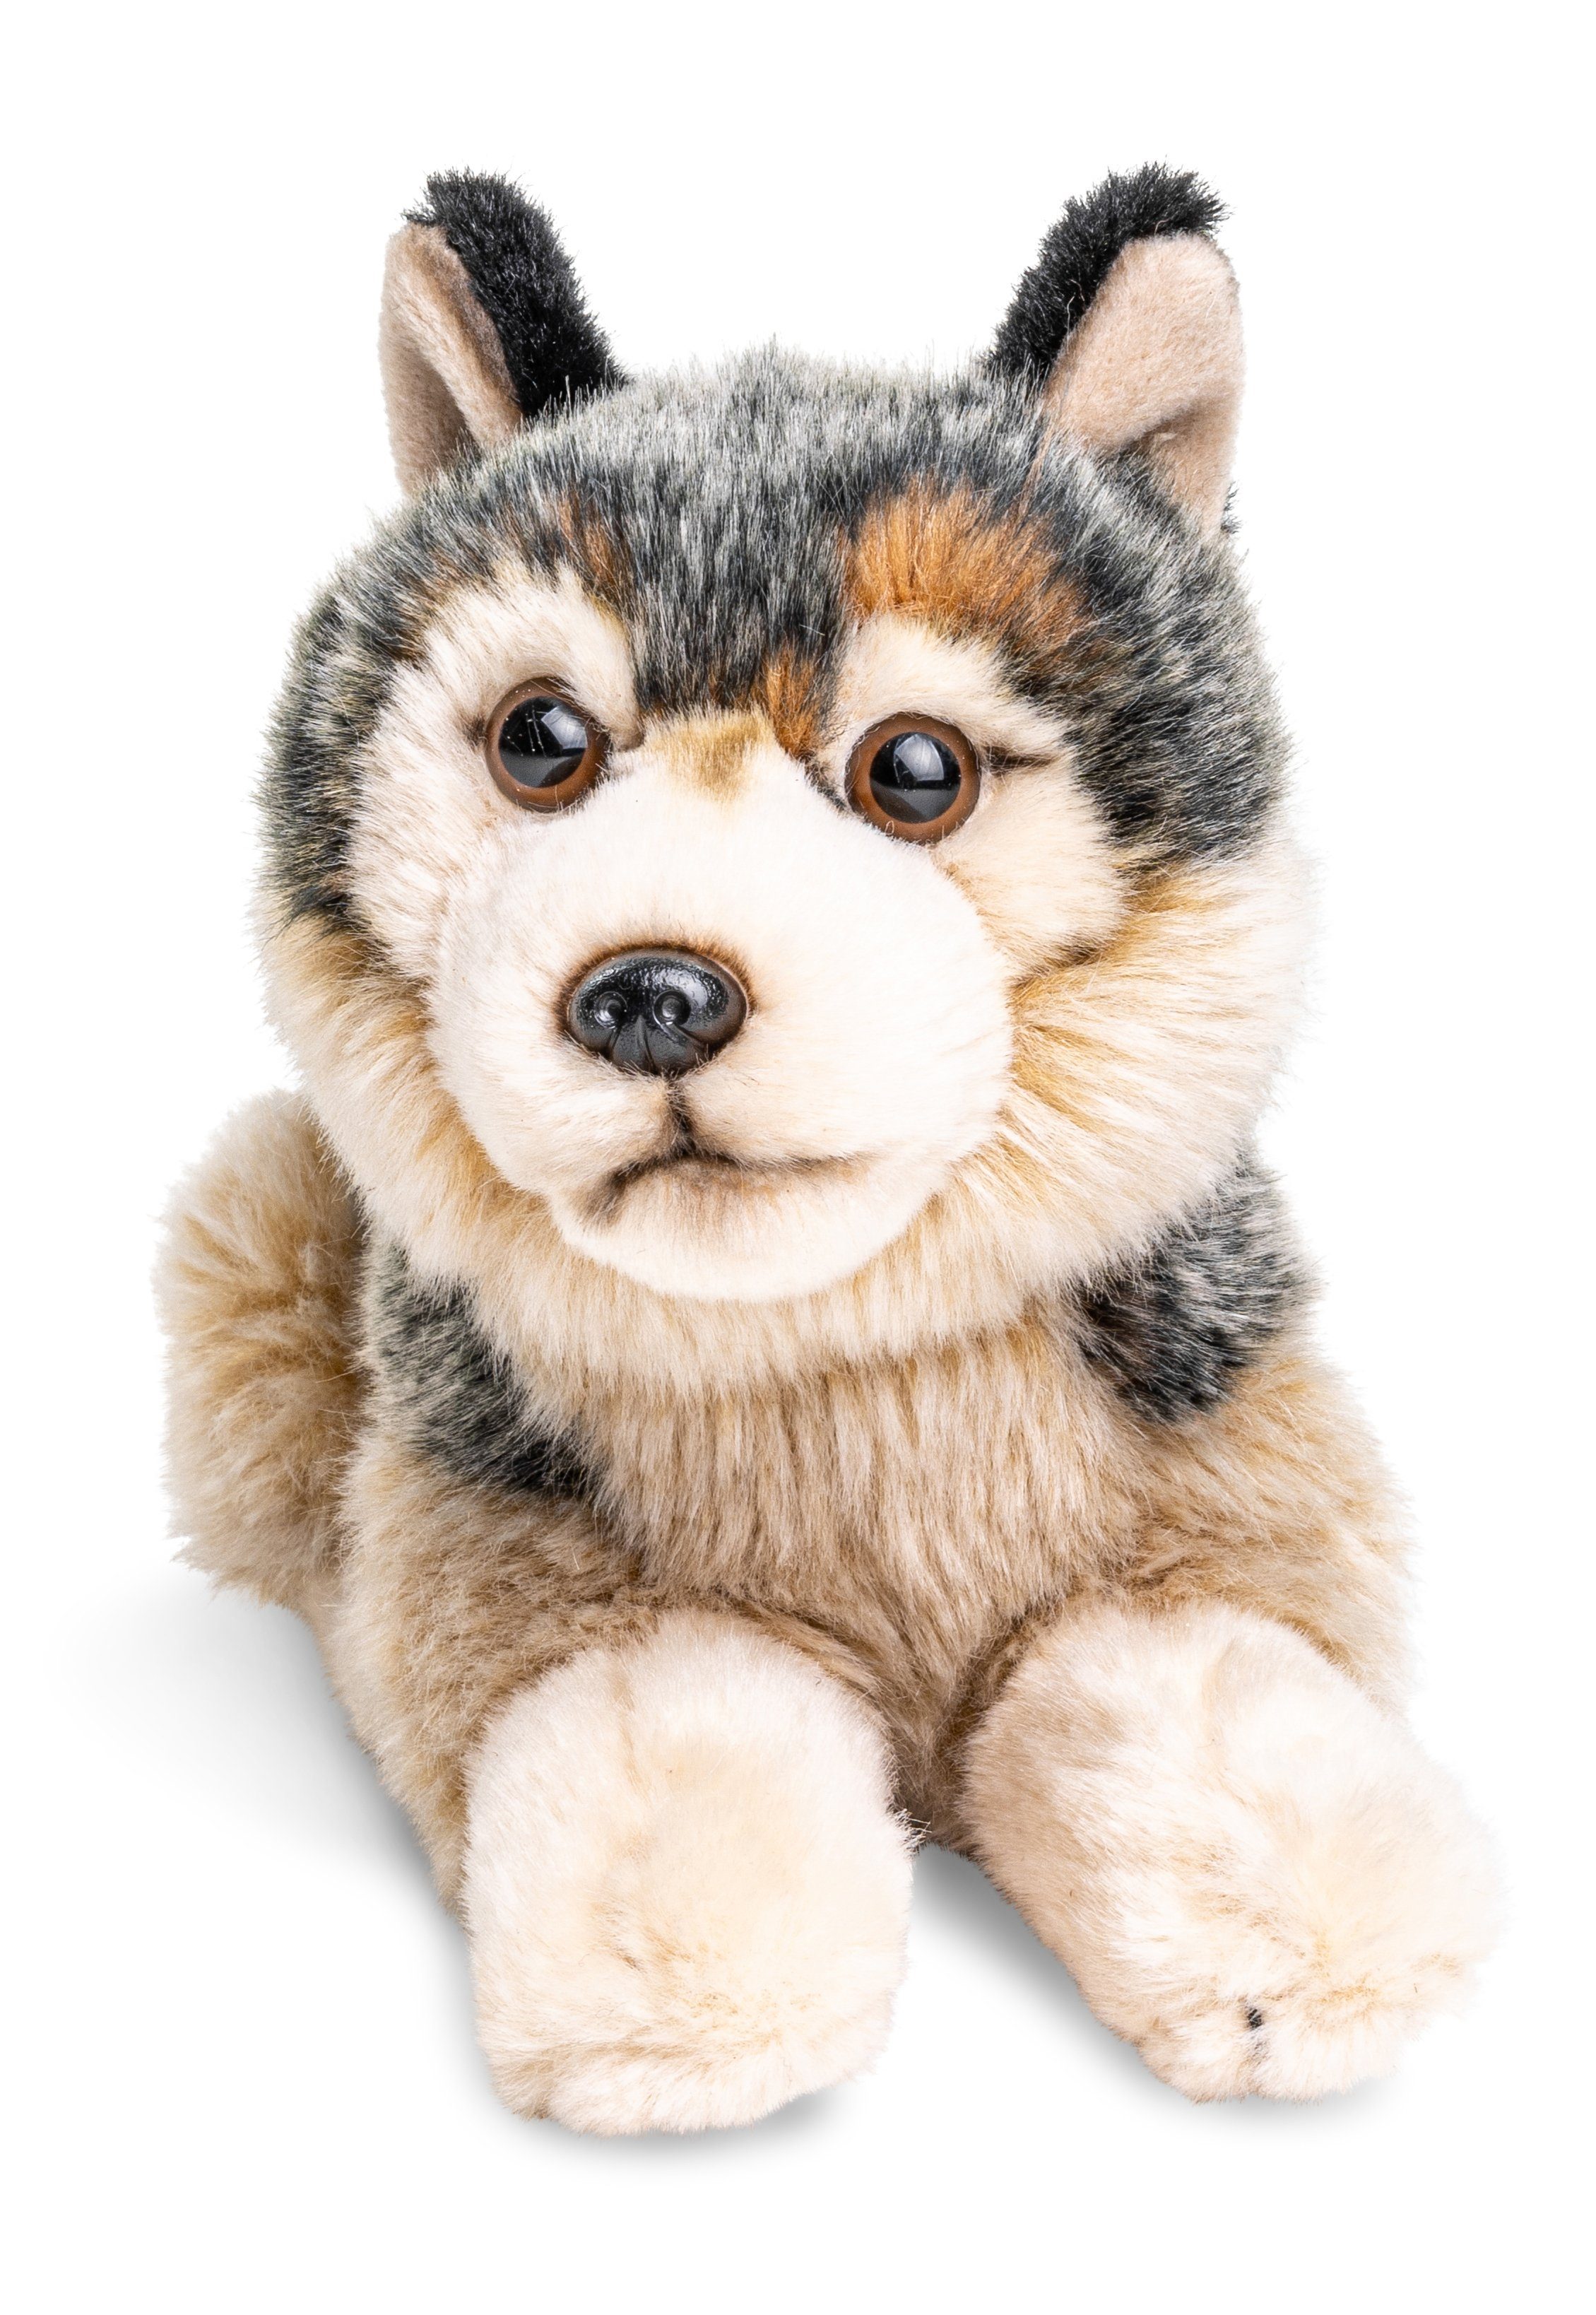 Uni-Toys Kuscheltier Grauwolf Junges, liegend - 22 cm (Länge) - Plüsch-Wolf - Plüschtier, zu 100 % recyceltes Füllmaterial